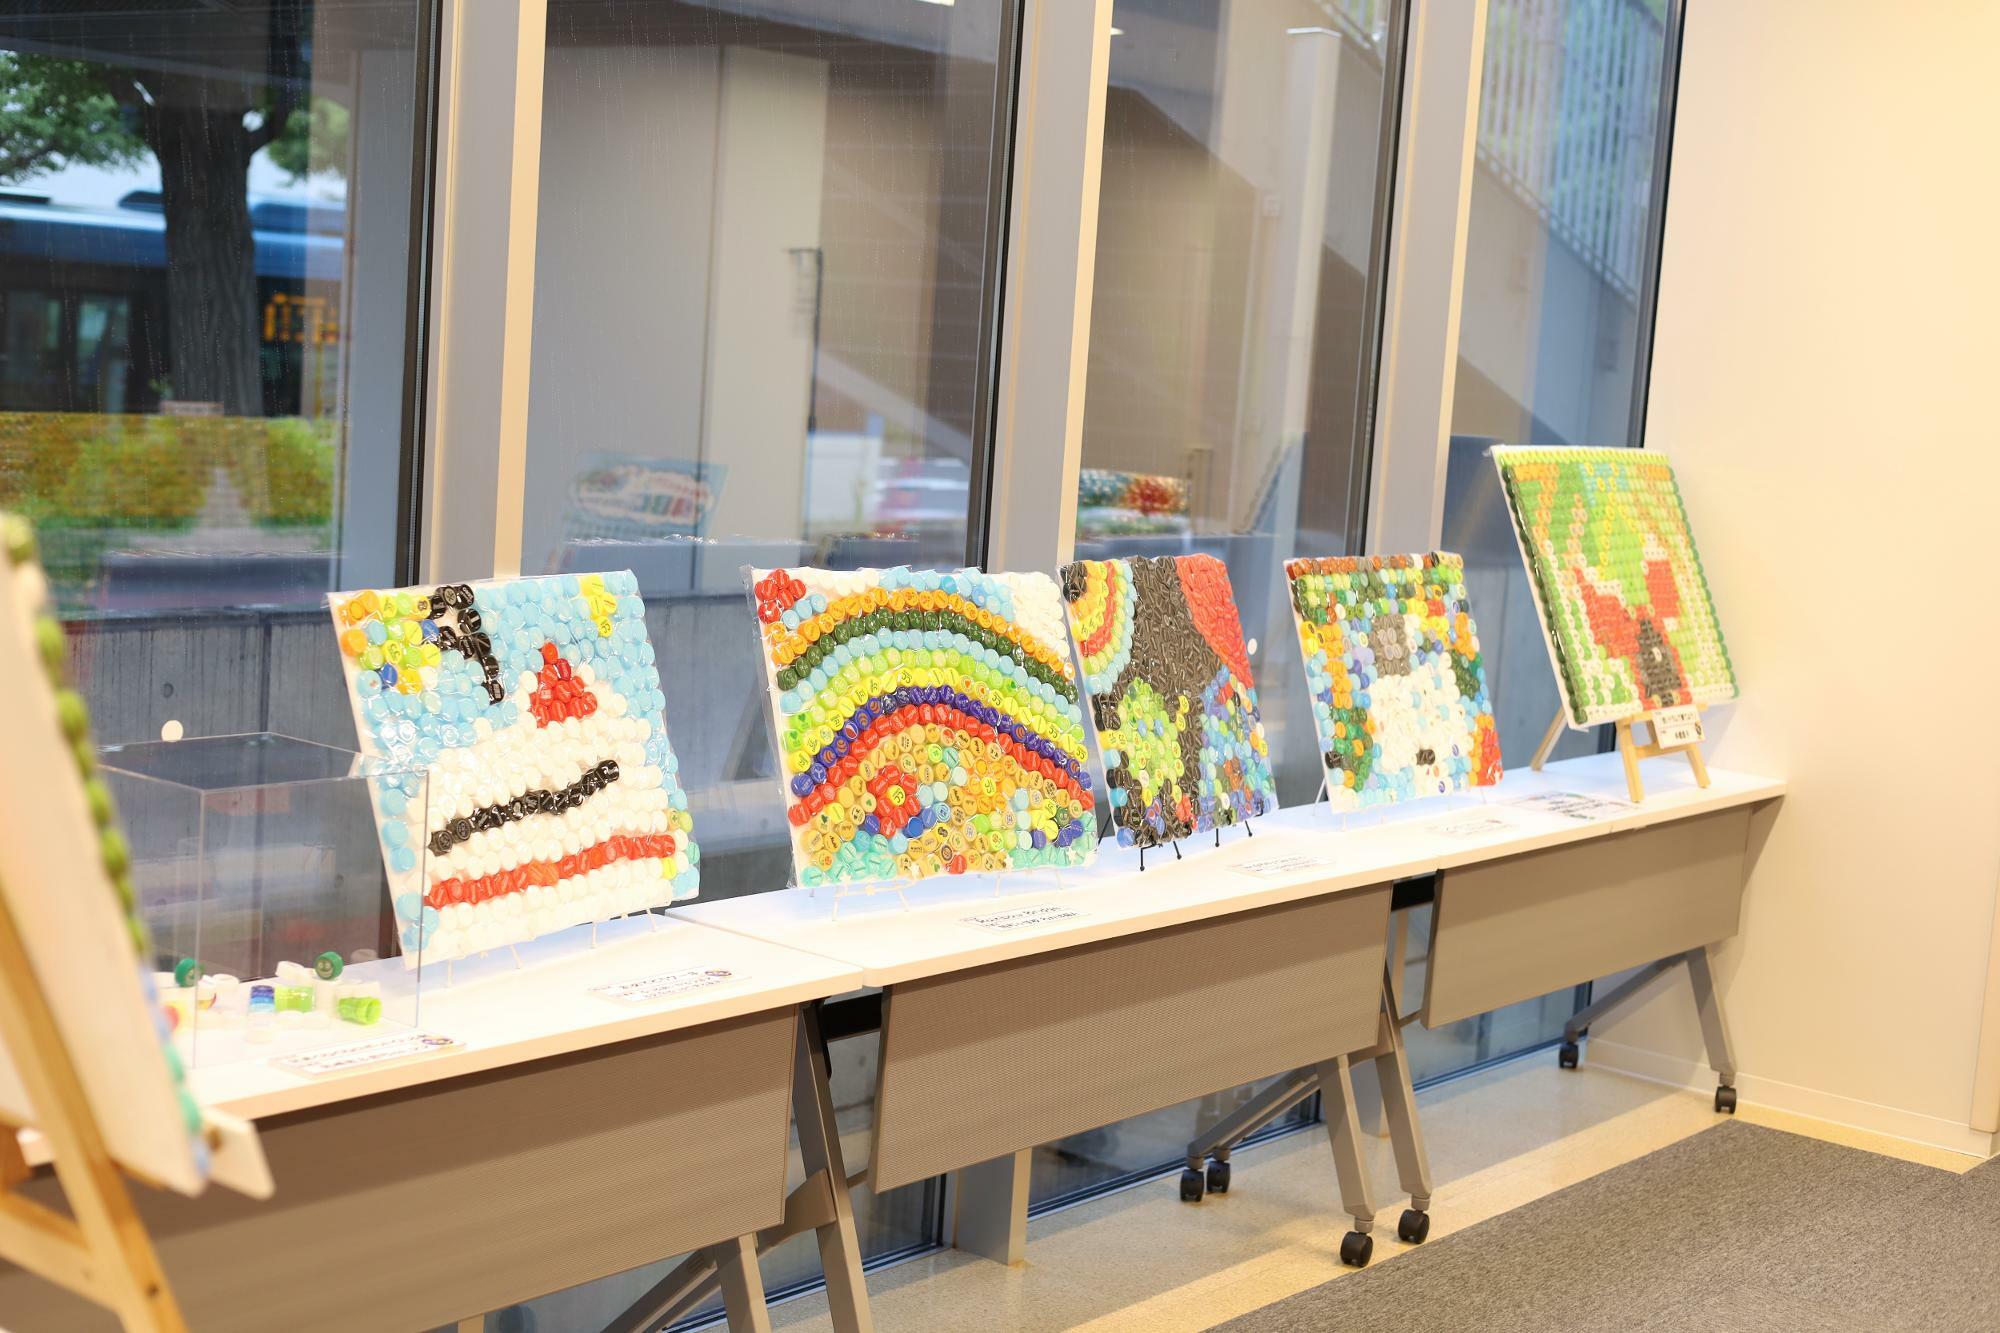 川崎市立旭町小学校や川崎市立宮前平小学校などの子どもたちがアスリートやアーティストと一緒に作った作品も展示。